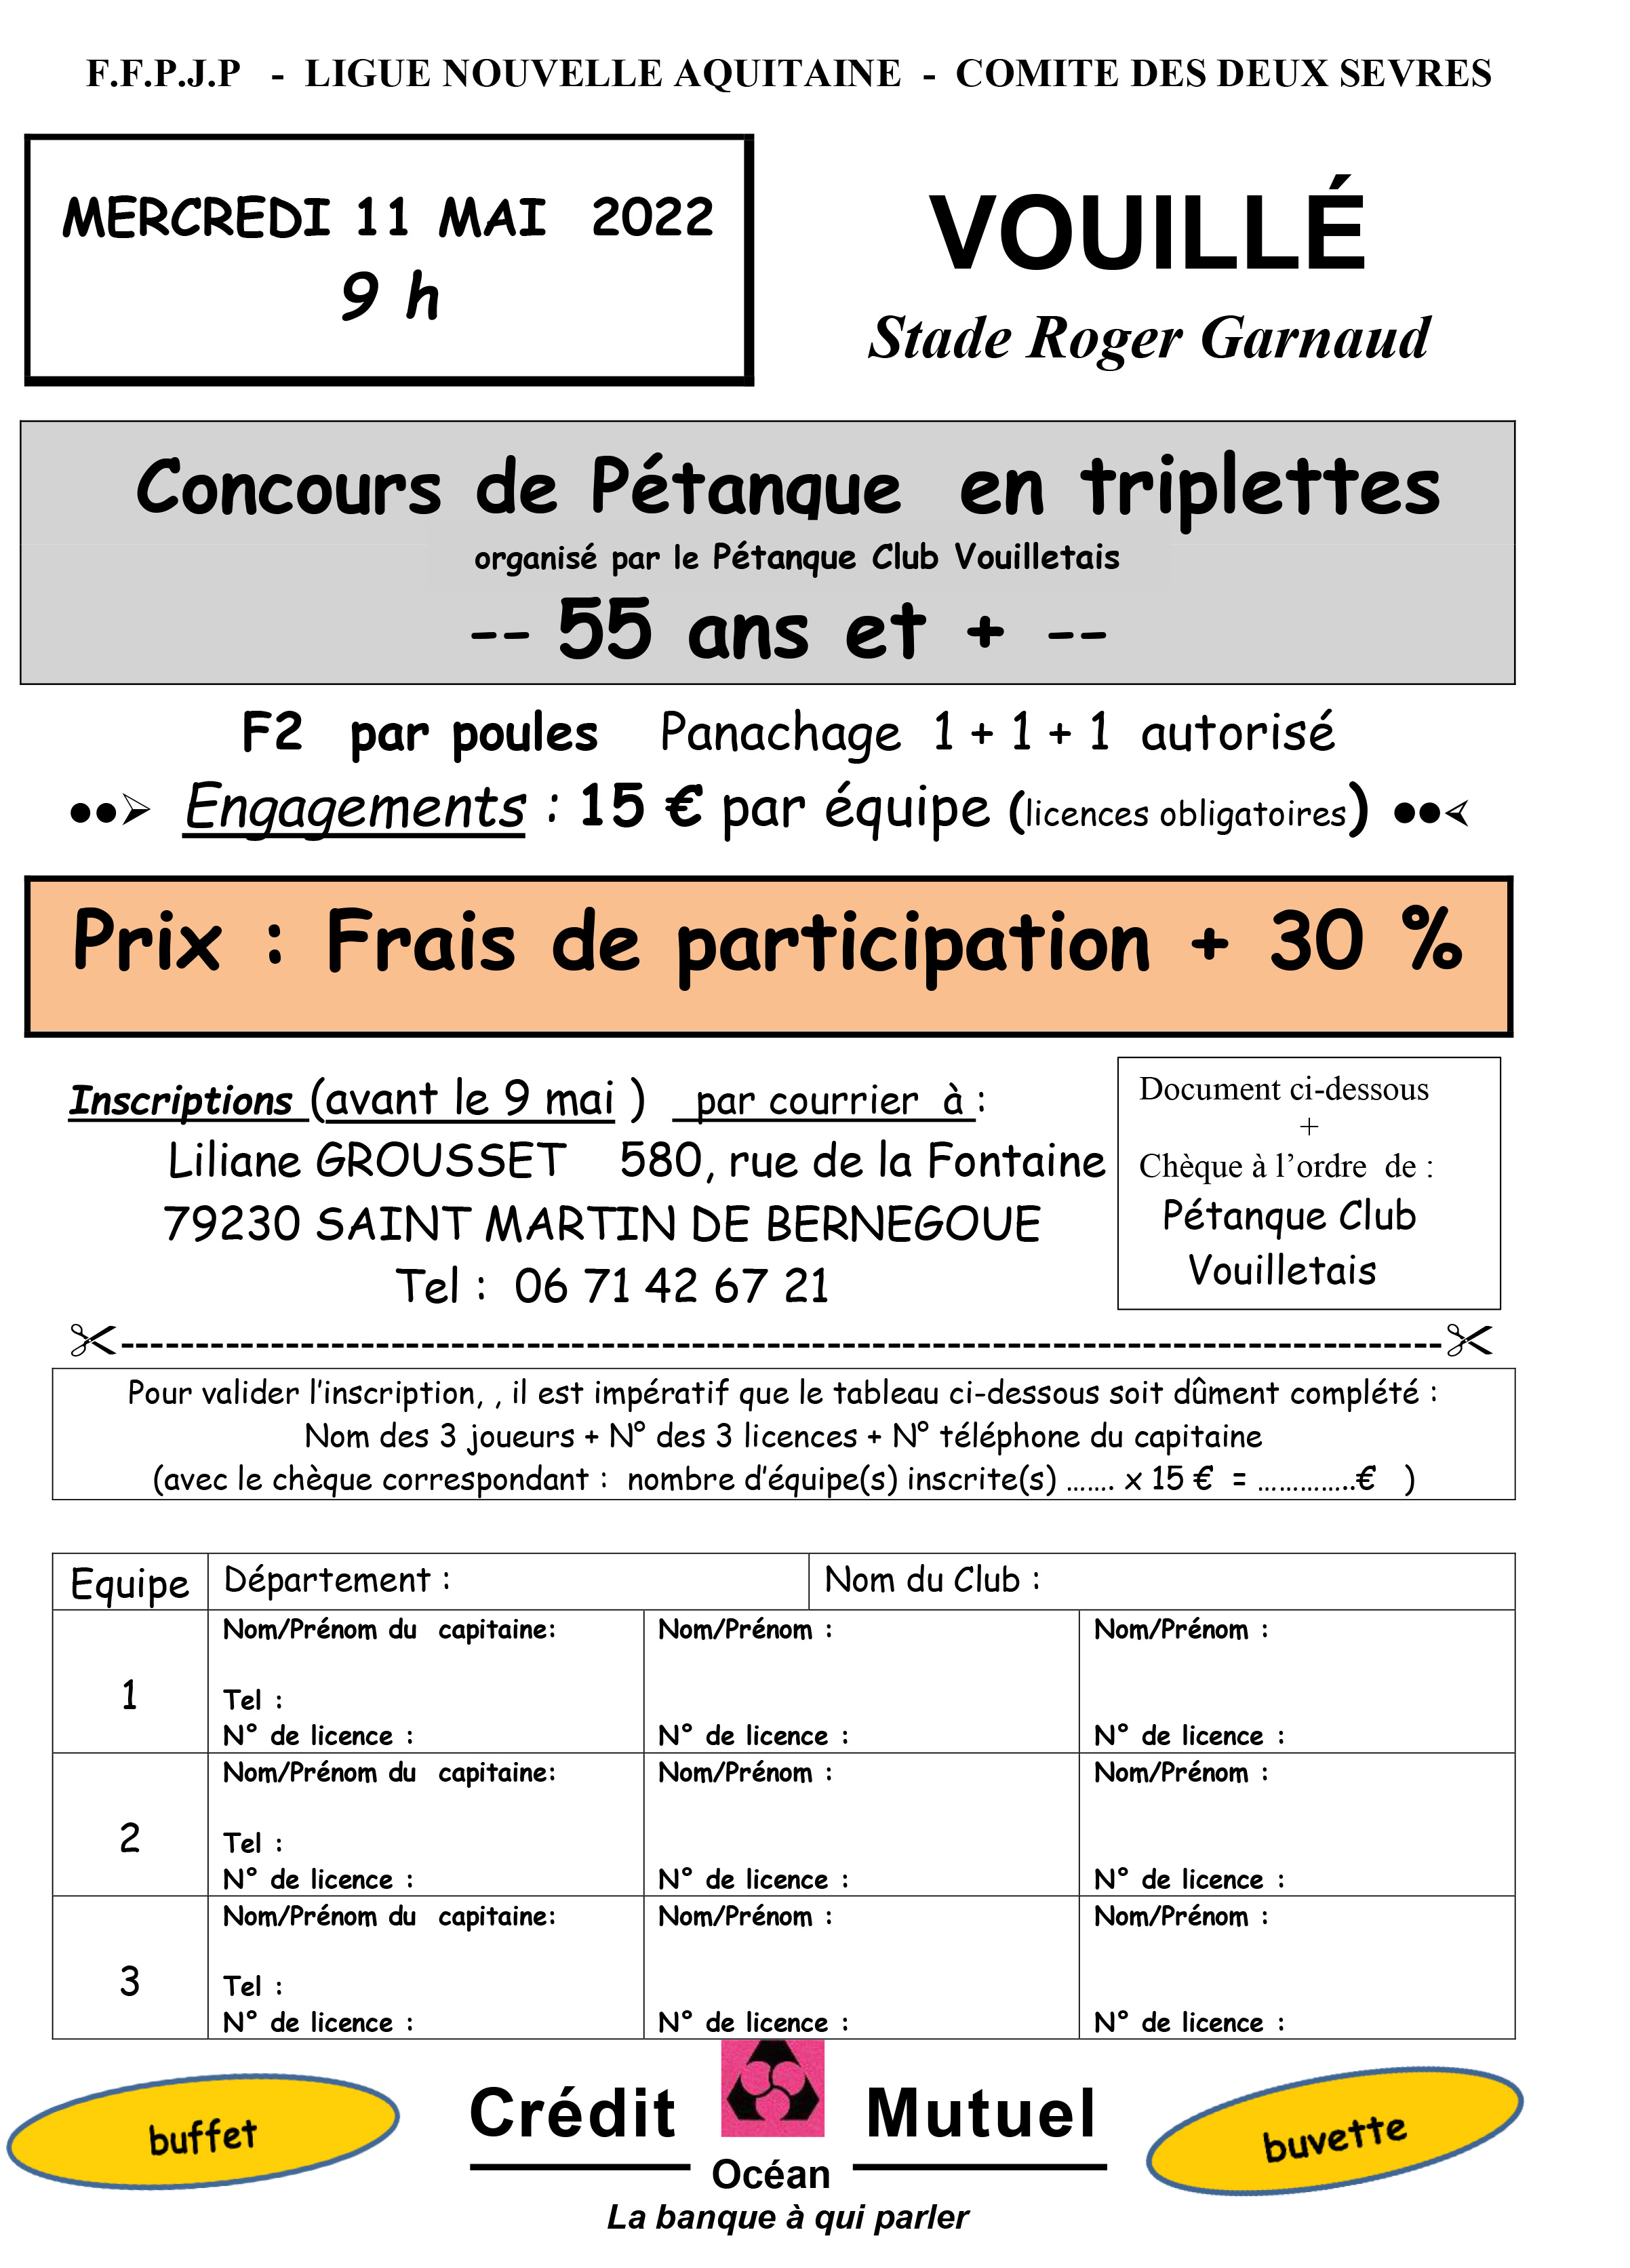 Concours pétanque 11 mai 2022 - Vouillé